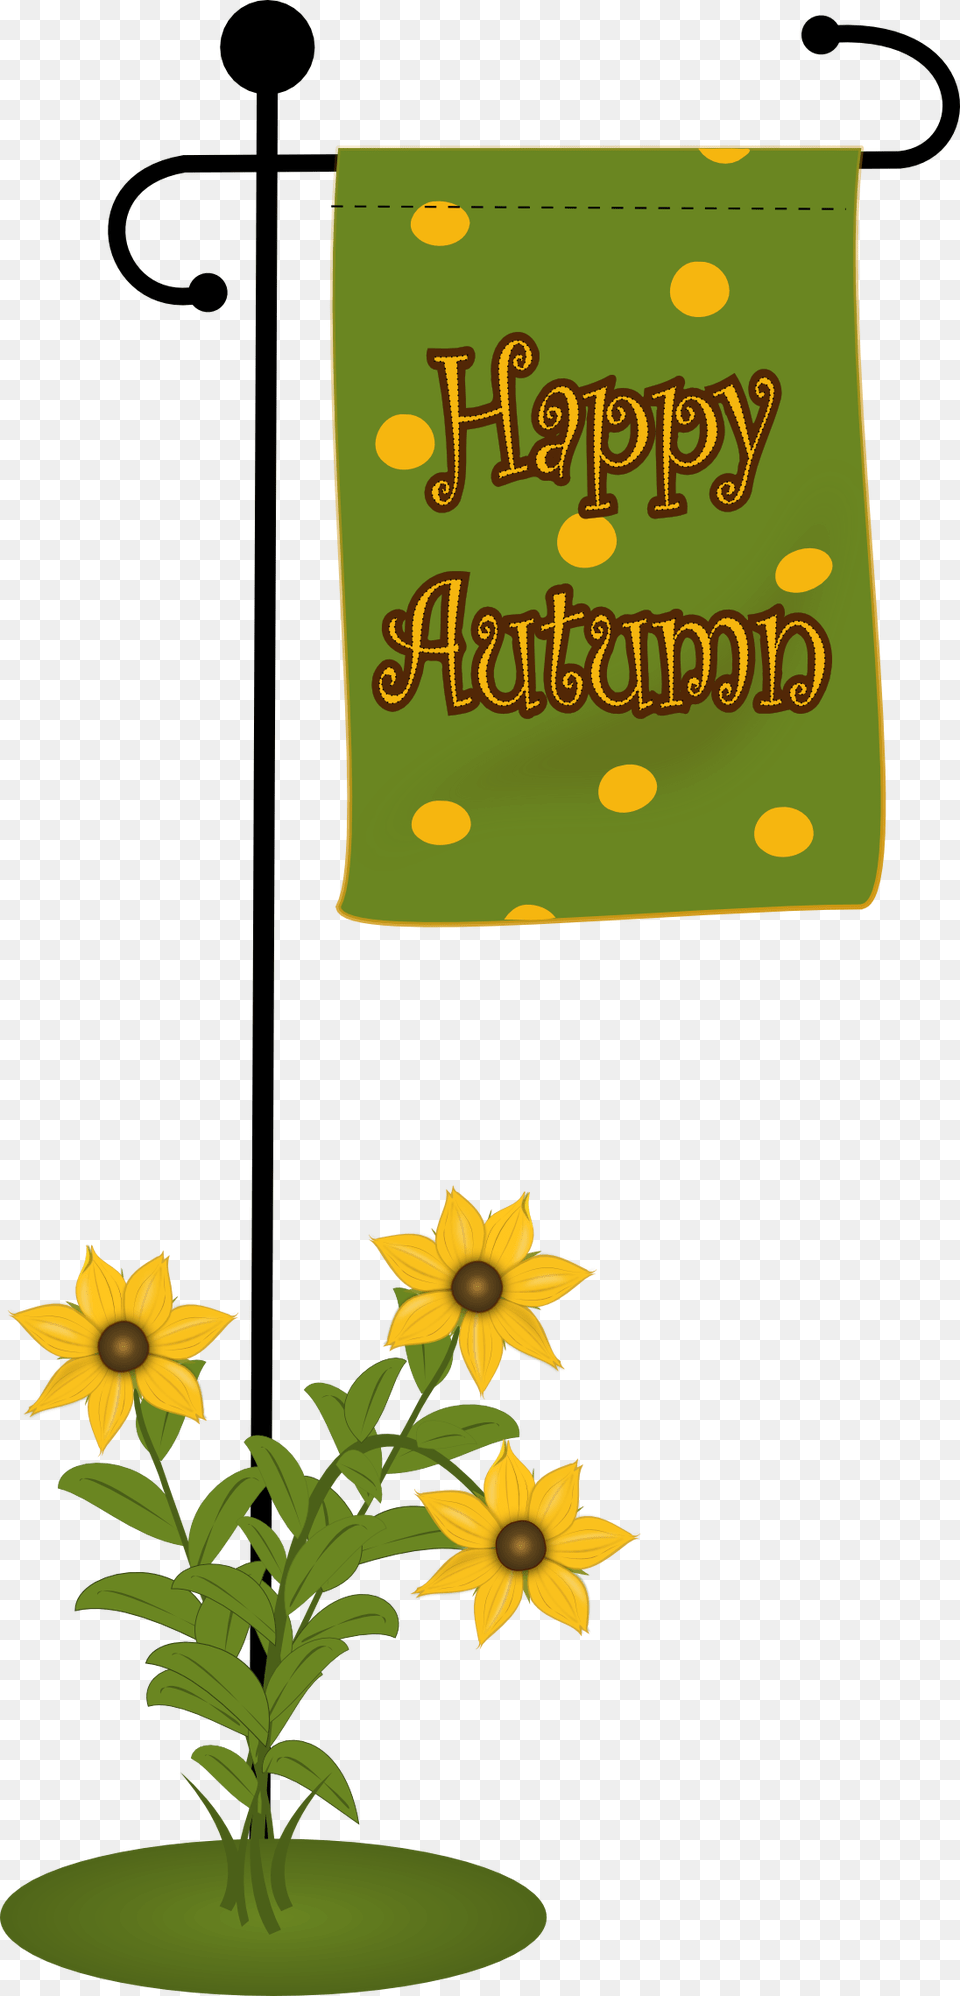 I Love Black Eyed Susans Flag, Flower, Plant, Sunflower, Daffodil Free Transparent Png